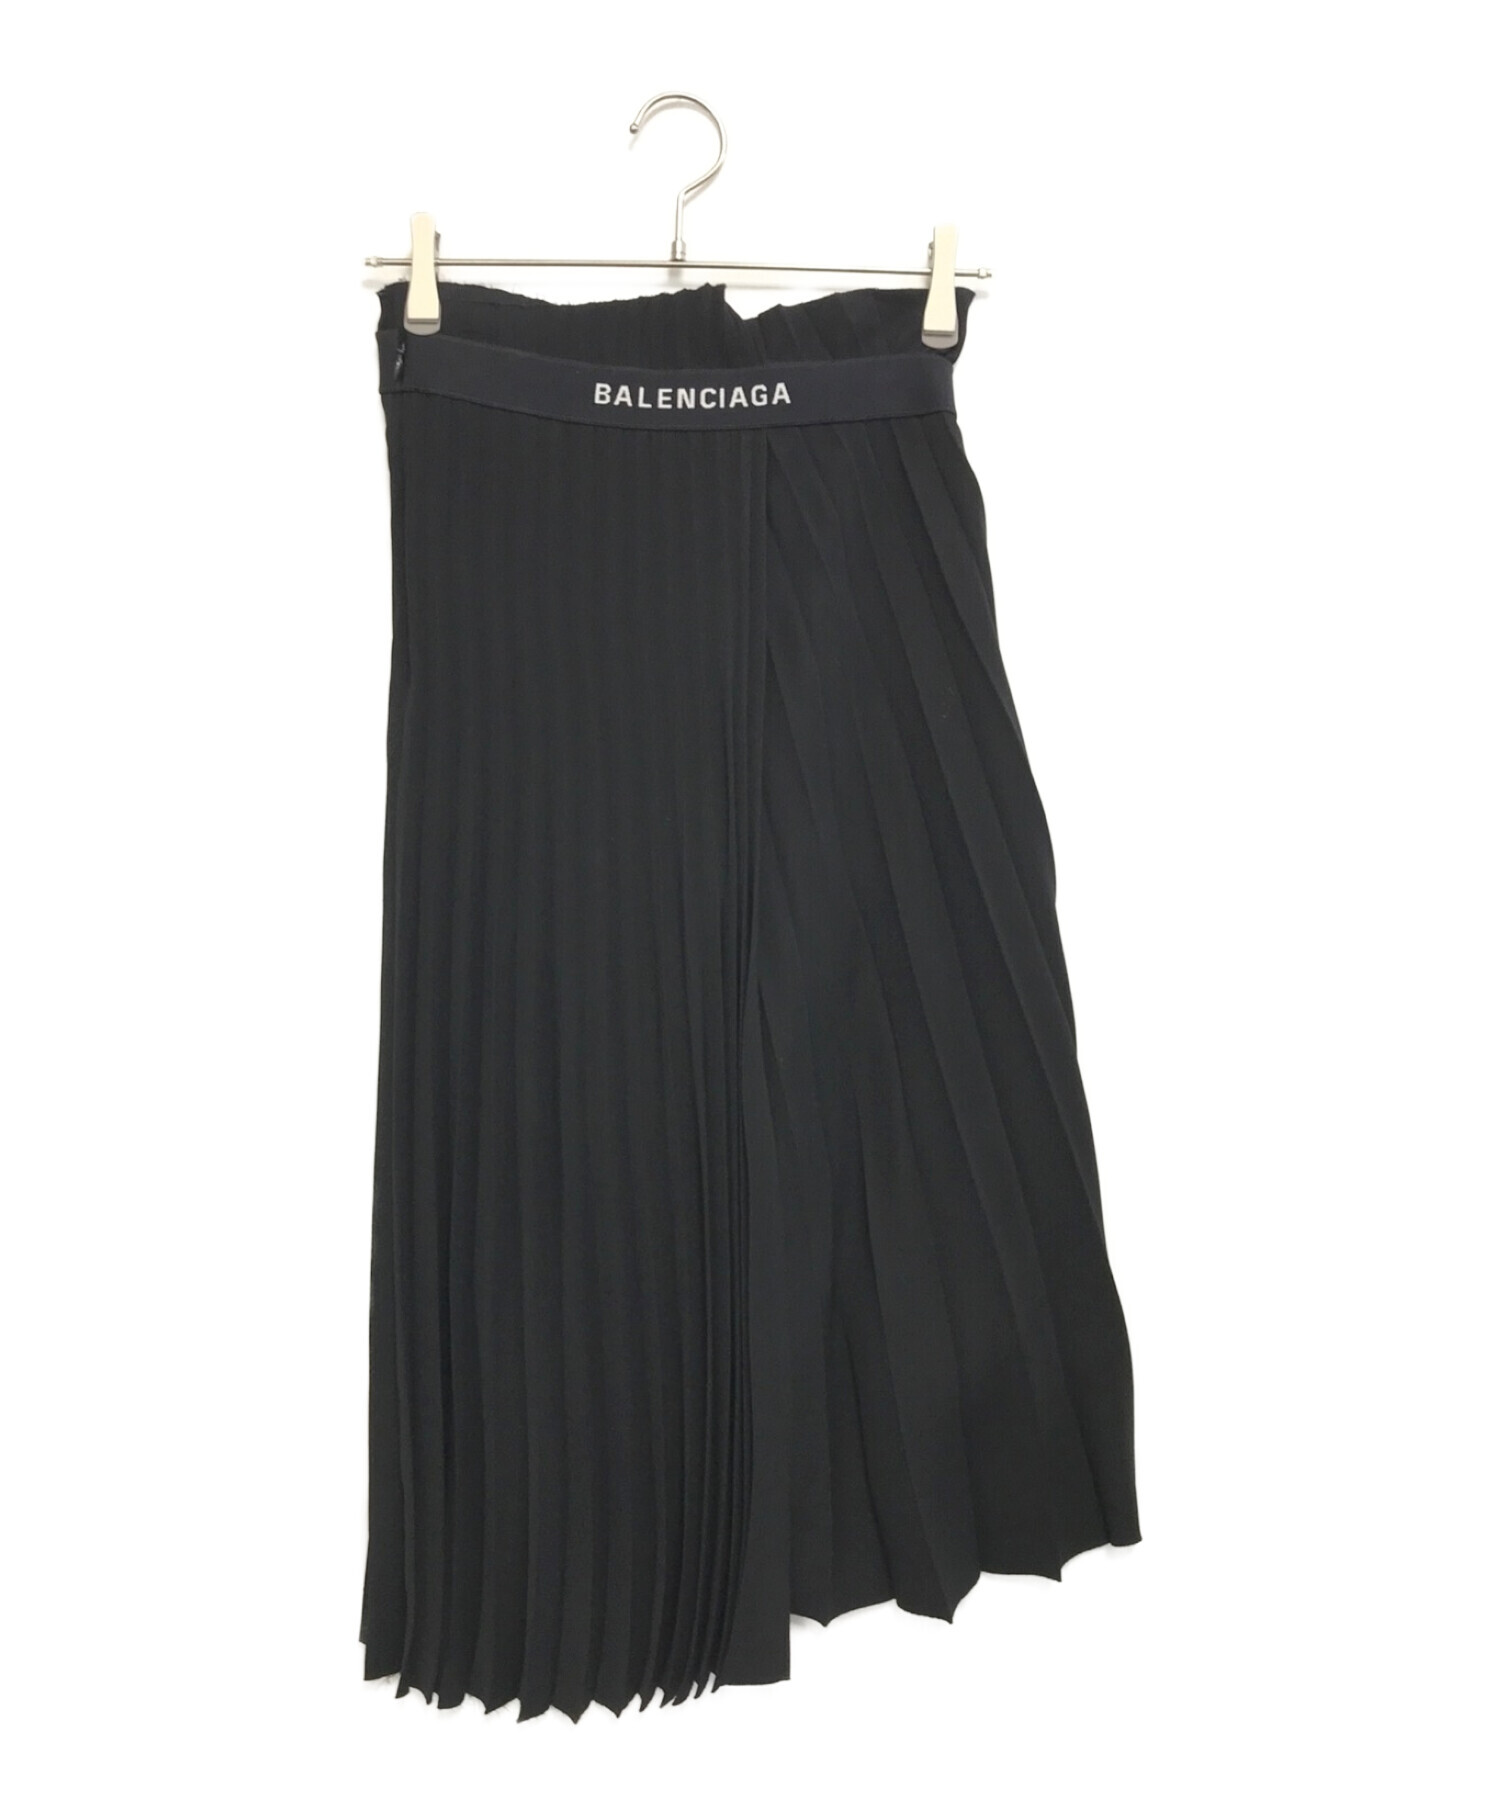 BALENCIAGA (バレンシアガ) ロゴプリーツスカート ブラック サイズ:34